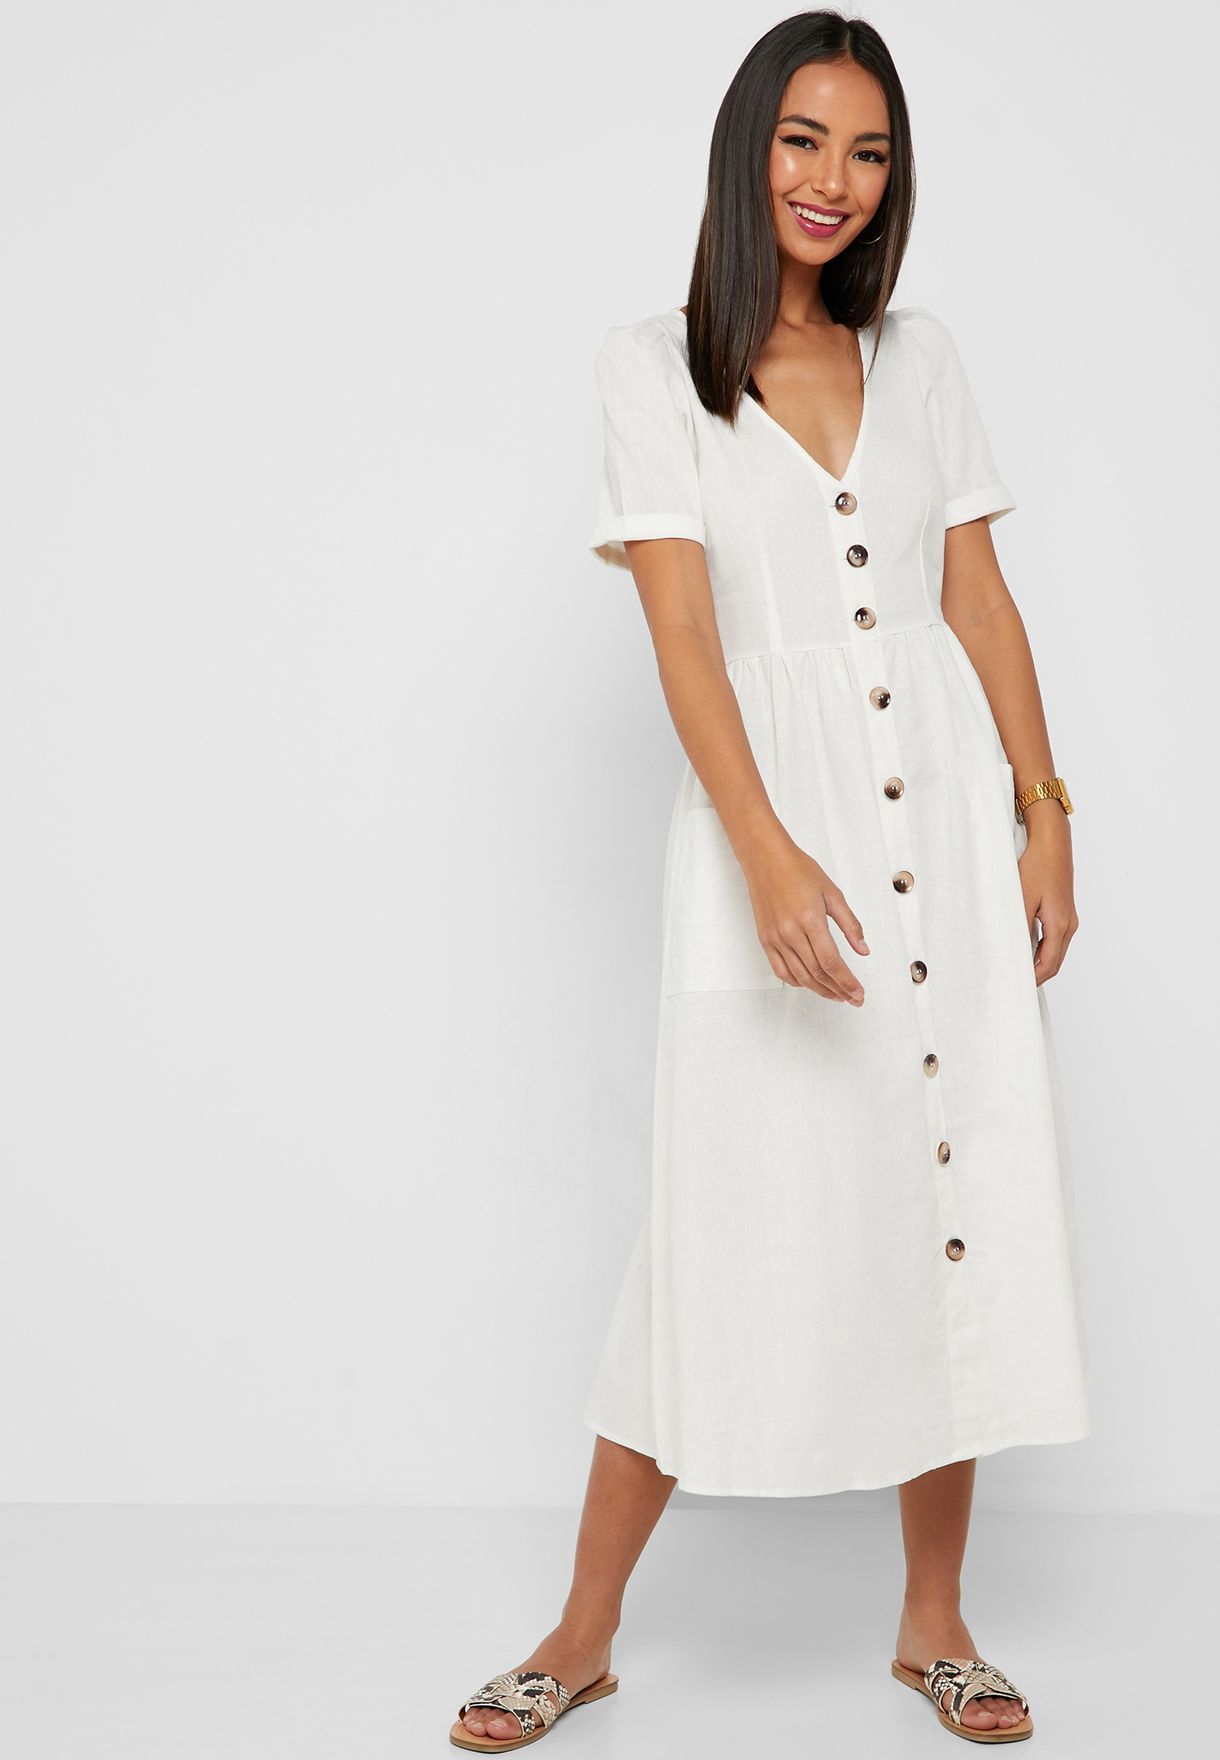 White Button Down Dress Flash Sales, 55 ...